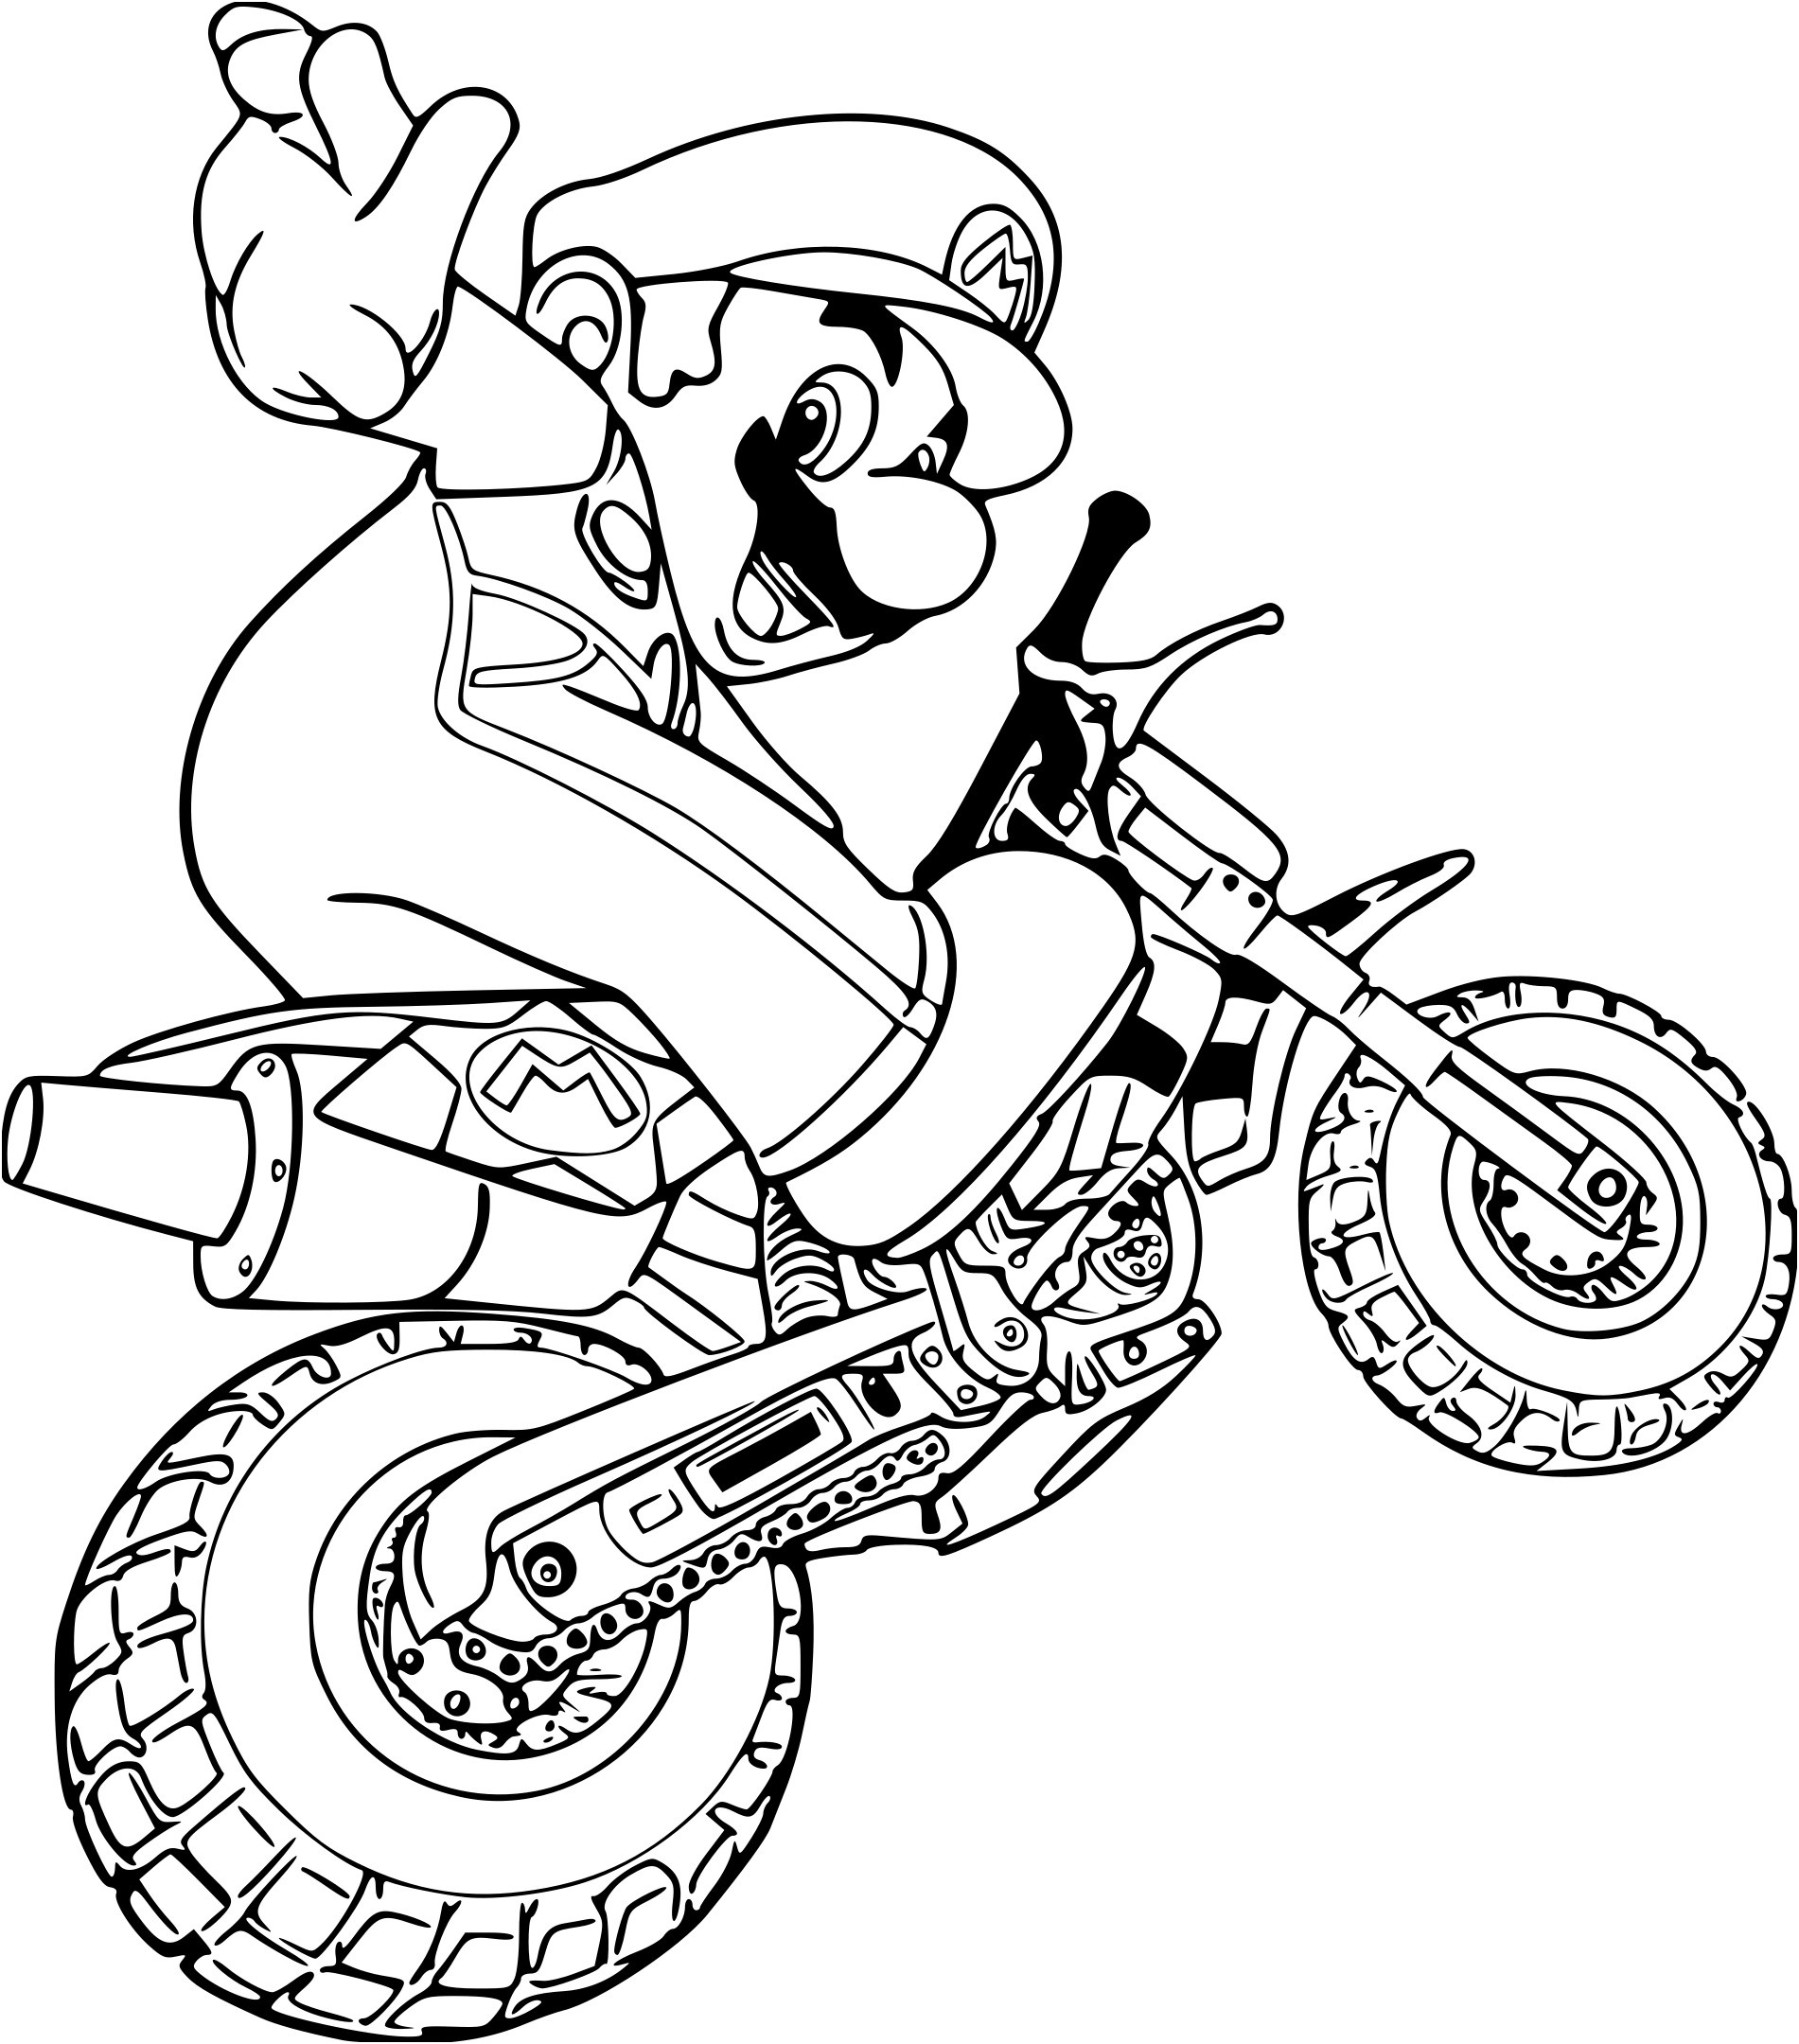 Coloriage Mario Kart Nice Coloriage Moto Mario à Imprimer